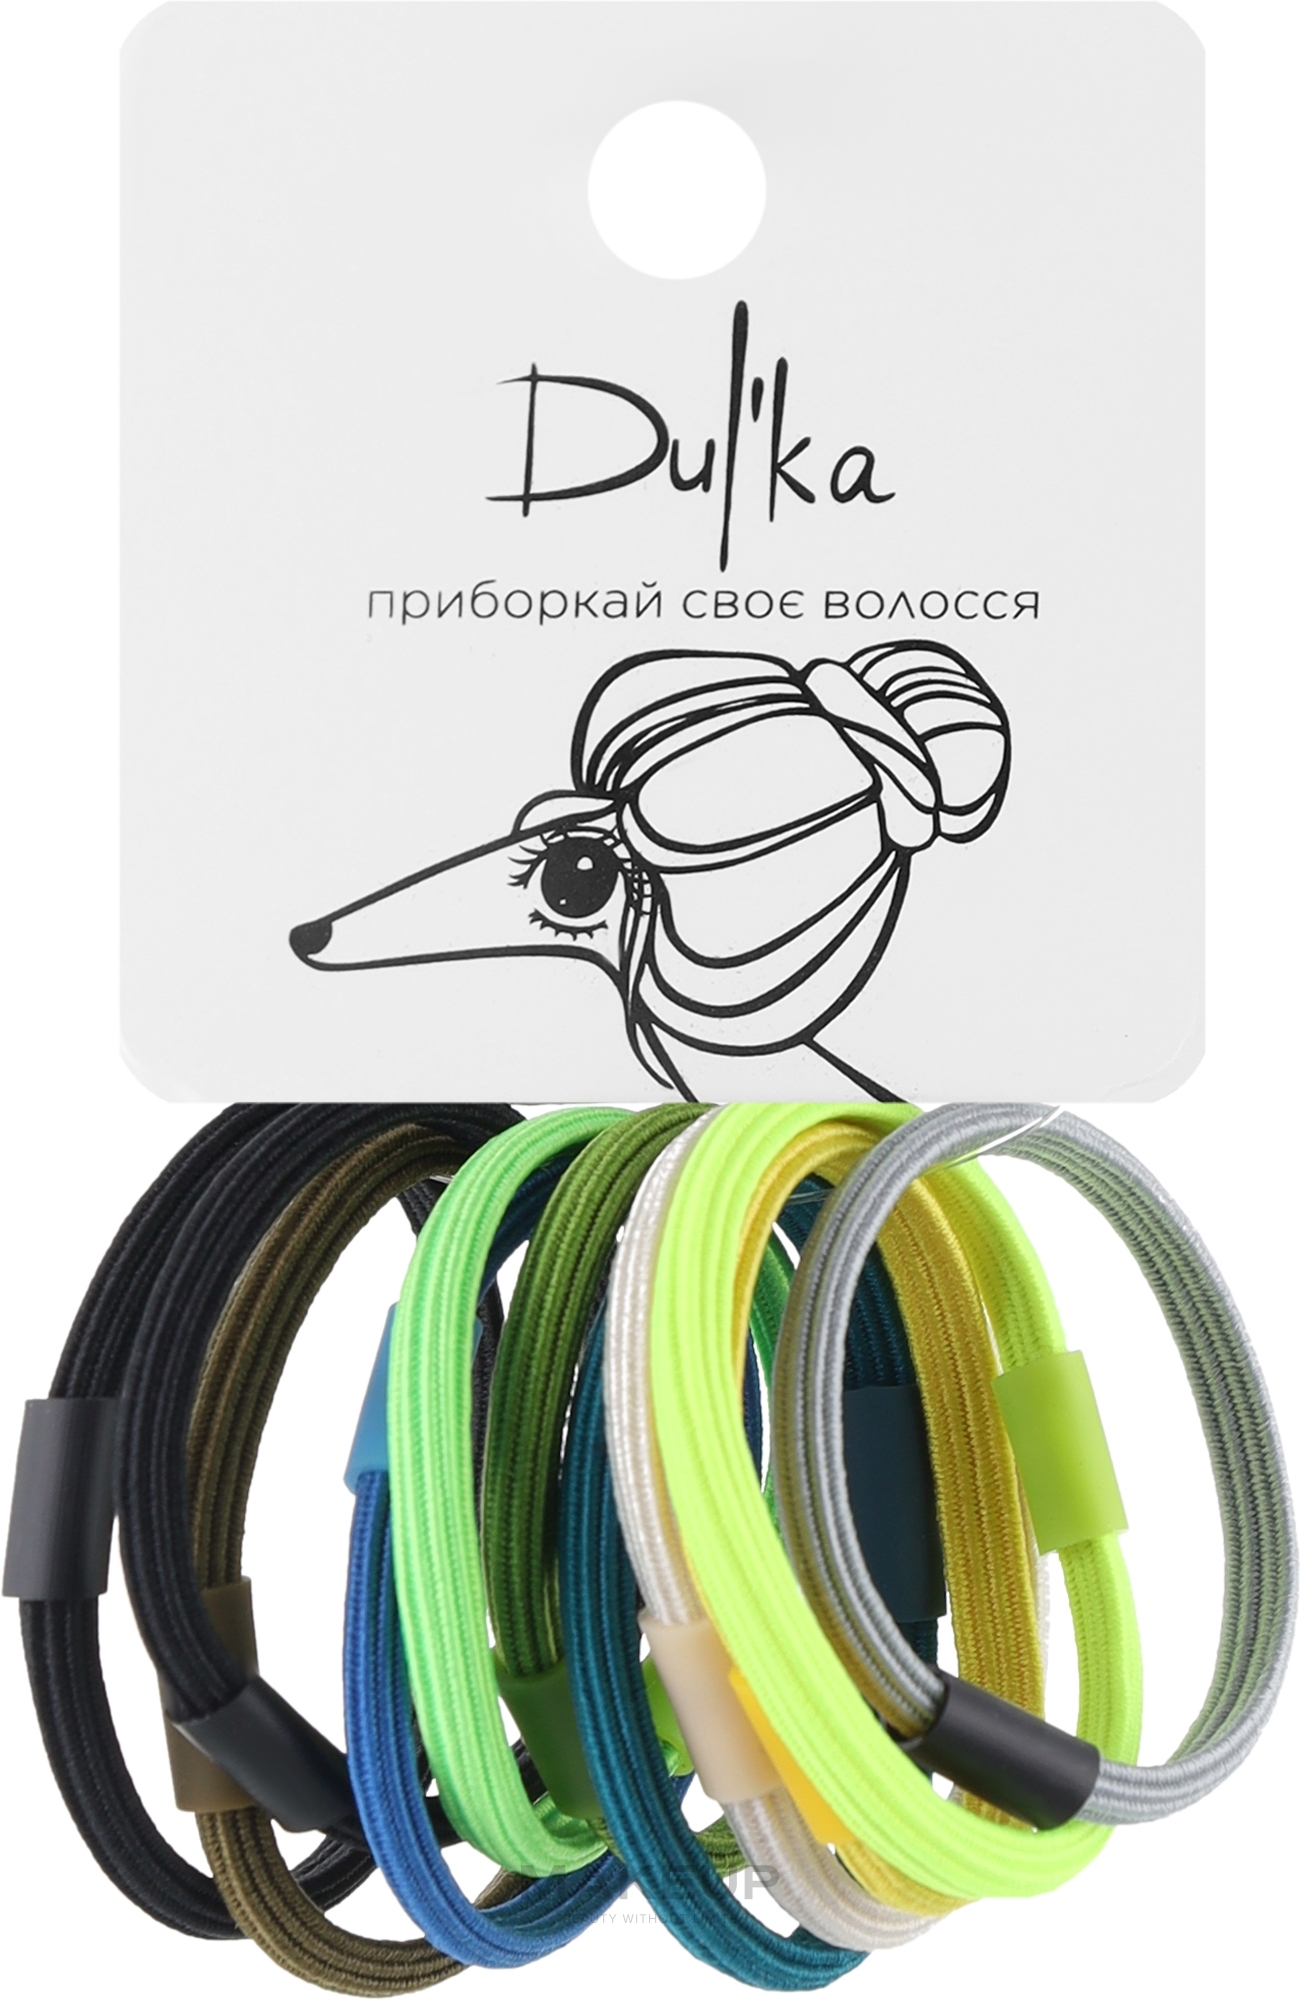 Набор разноцветных резинок для волос UH717713, 11 шт - Dulka  — фото 11шт